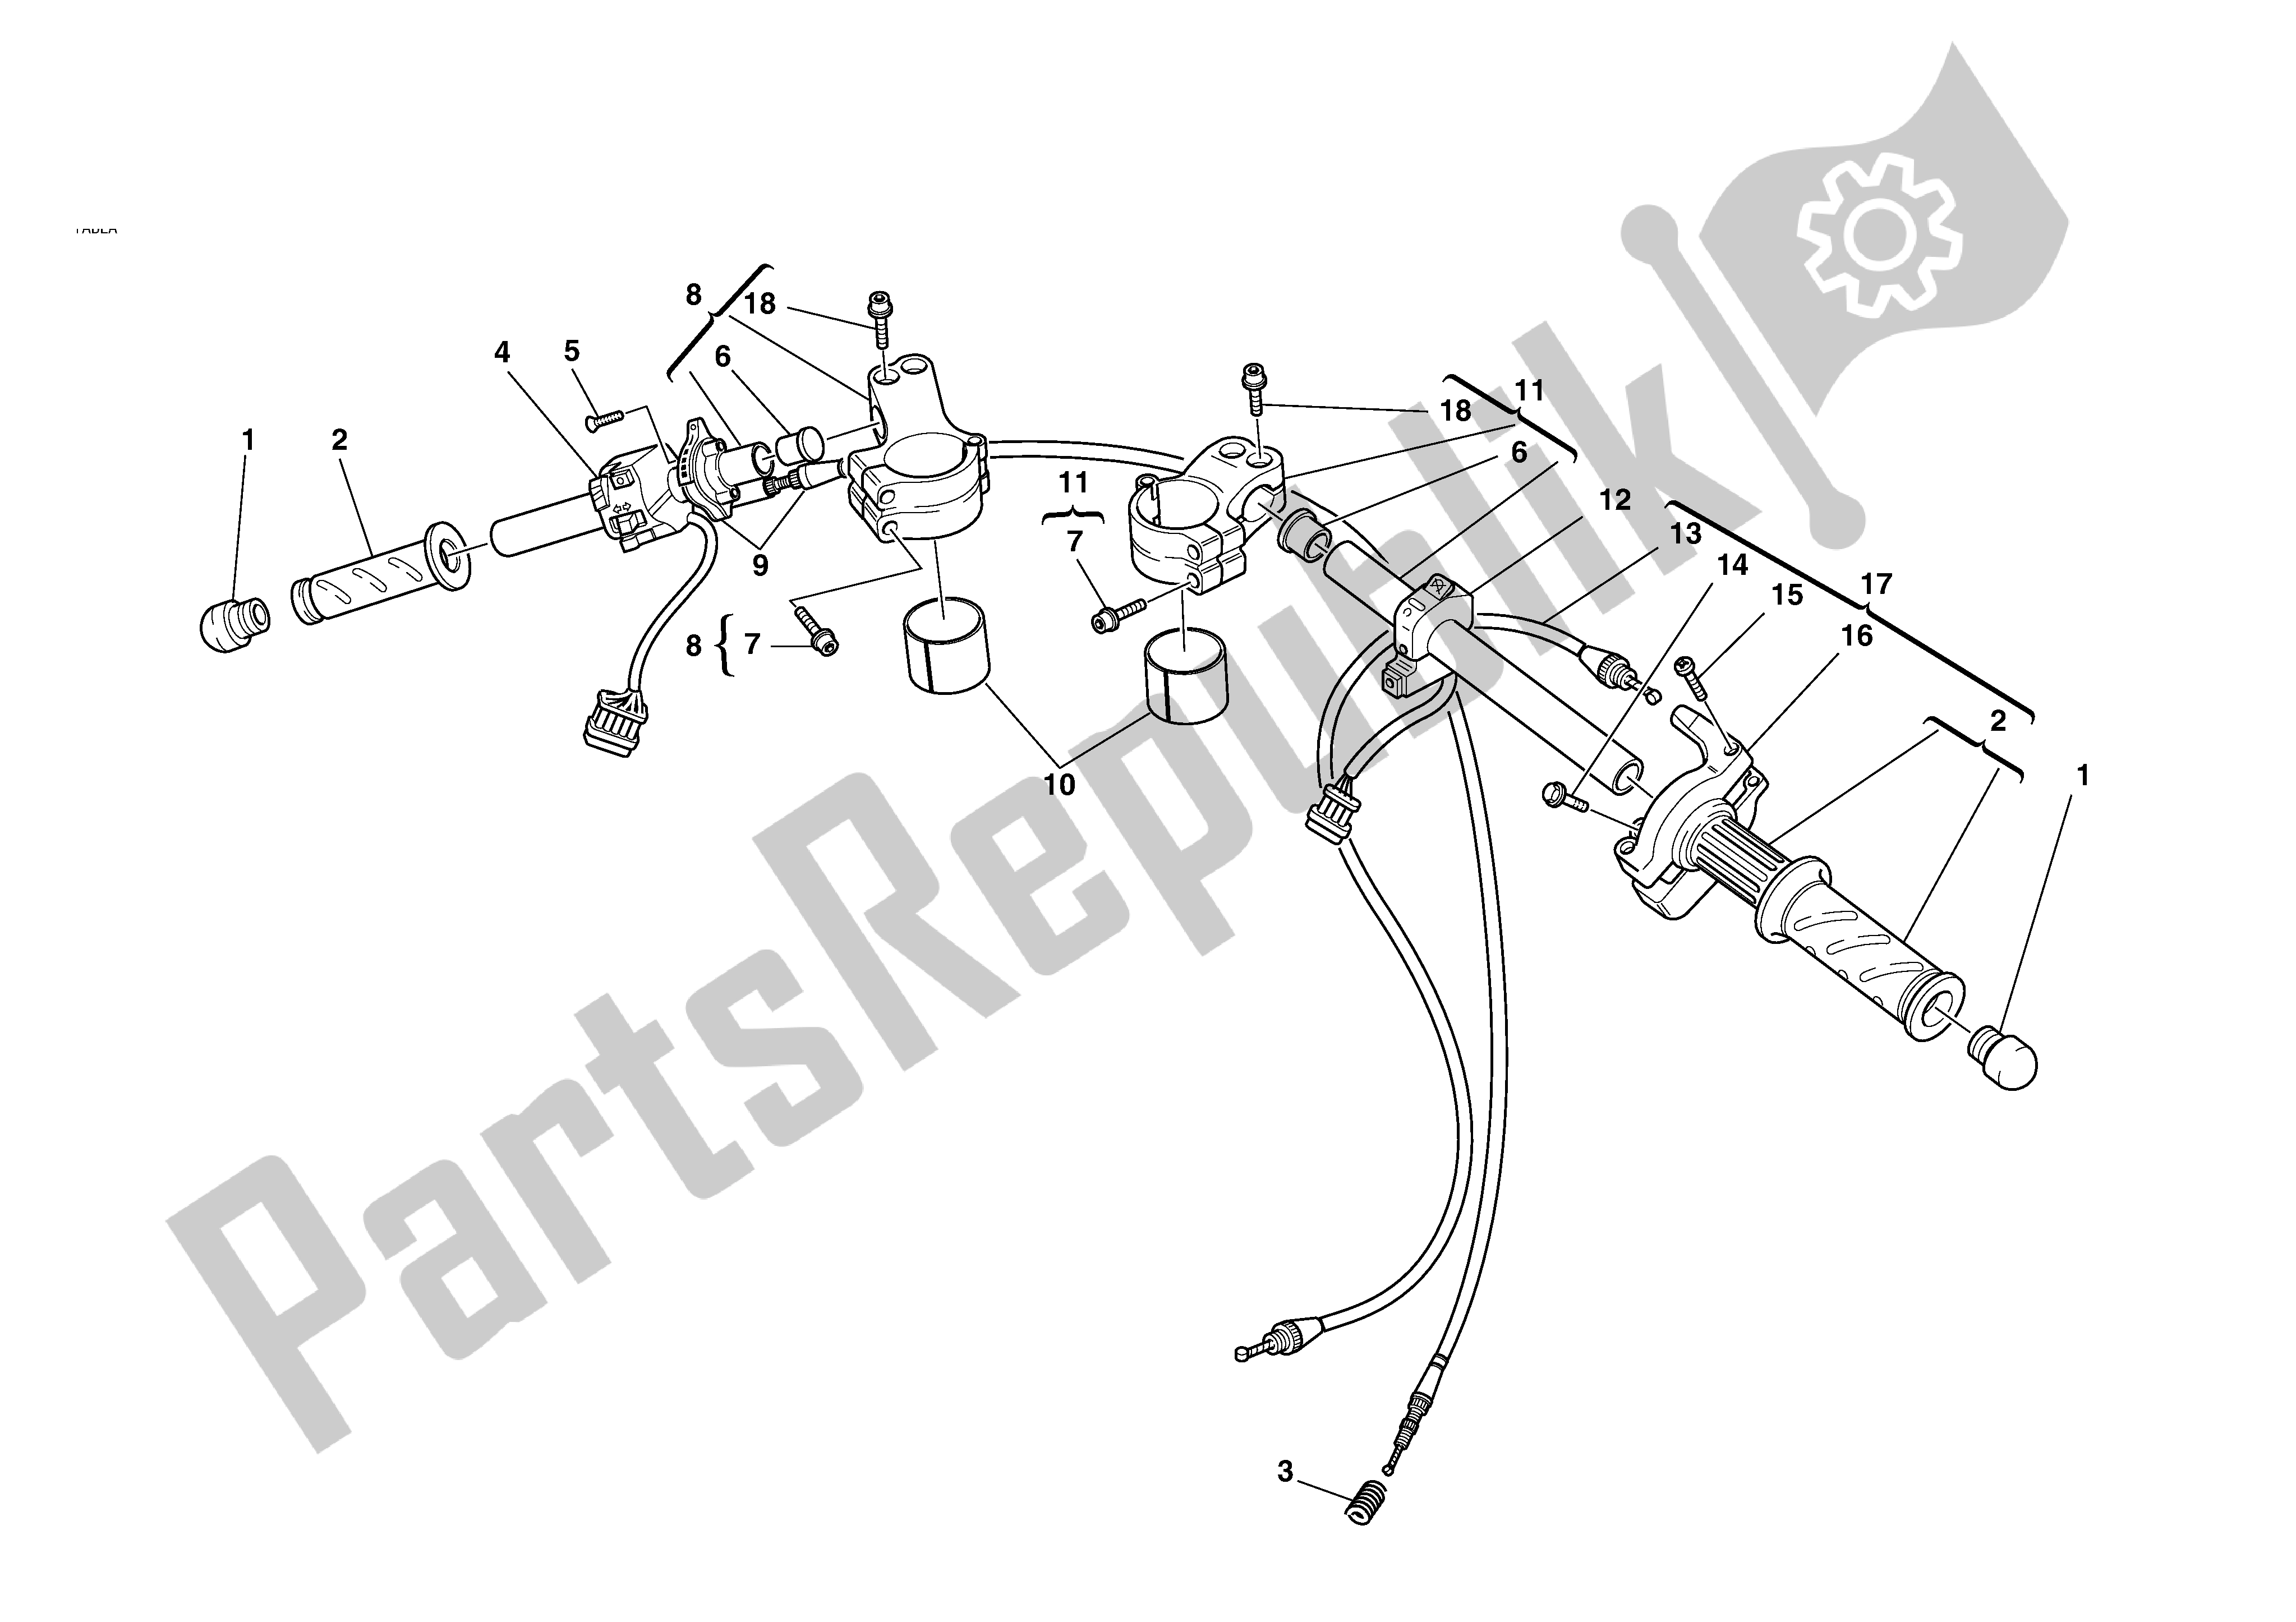 Todas las partes para Manillar Y Controles de Ducati MH 900 2001 - 2002